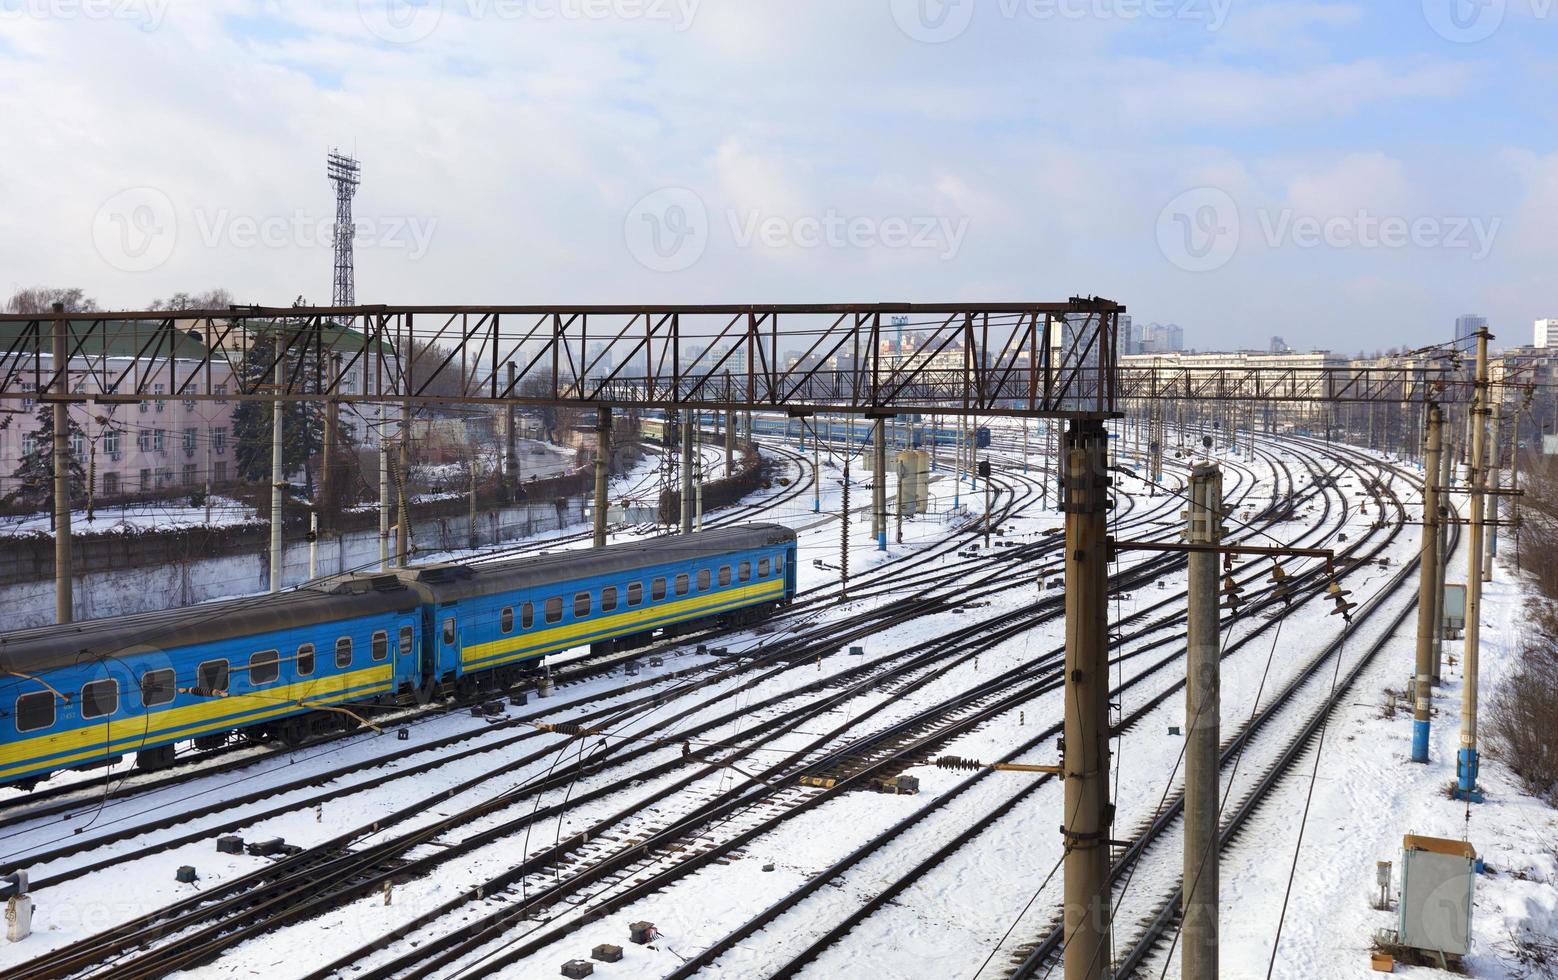 les wagons de chemin de fer de passagers roulent le long des voies ferrées en hiver dans le contexte du paysage urbain photo